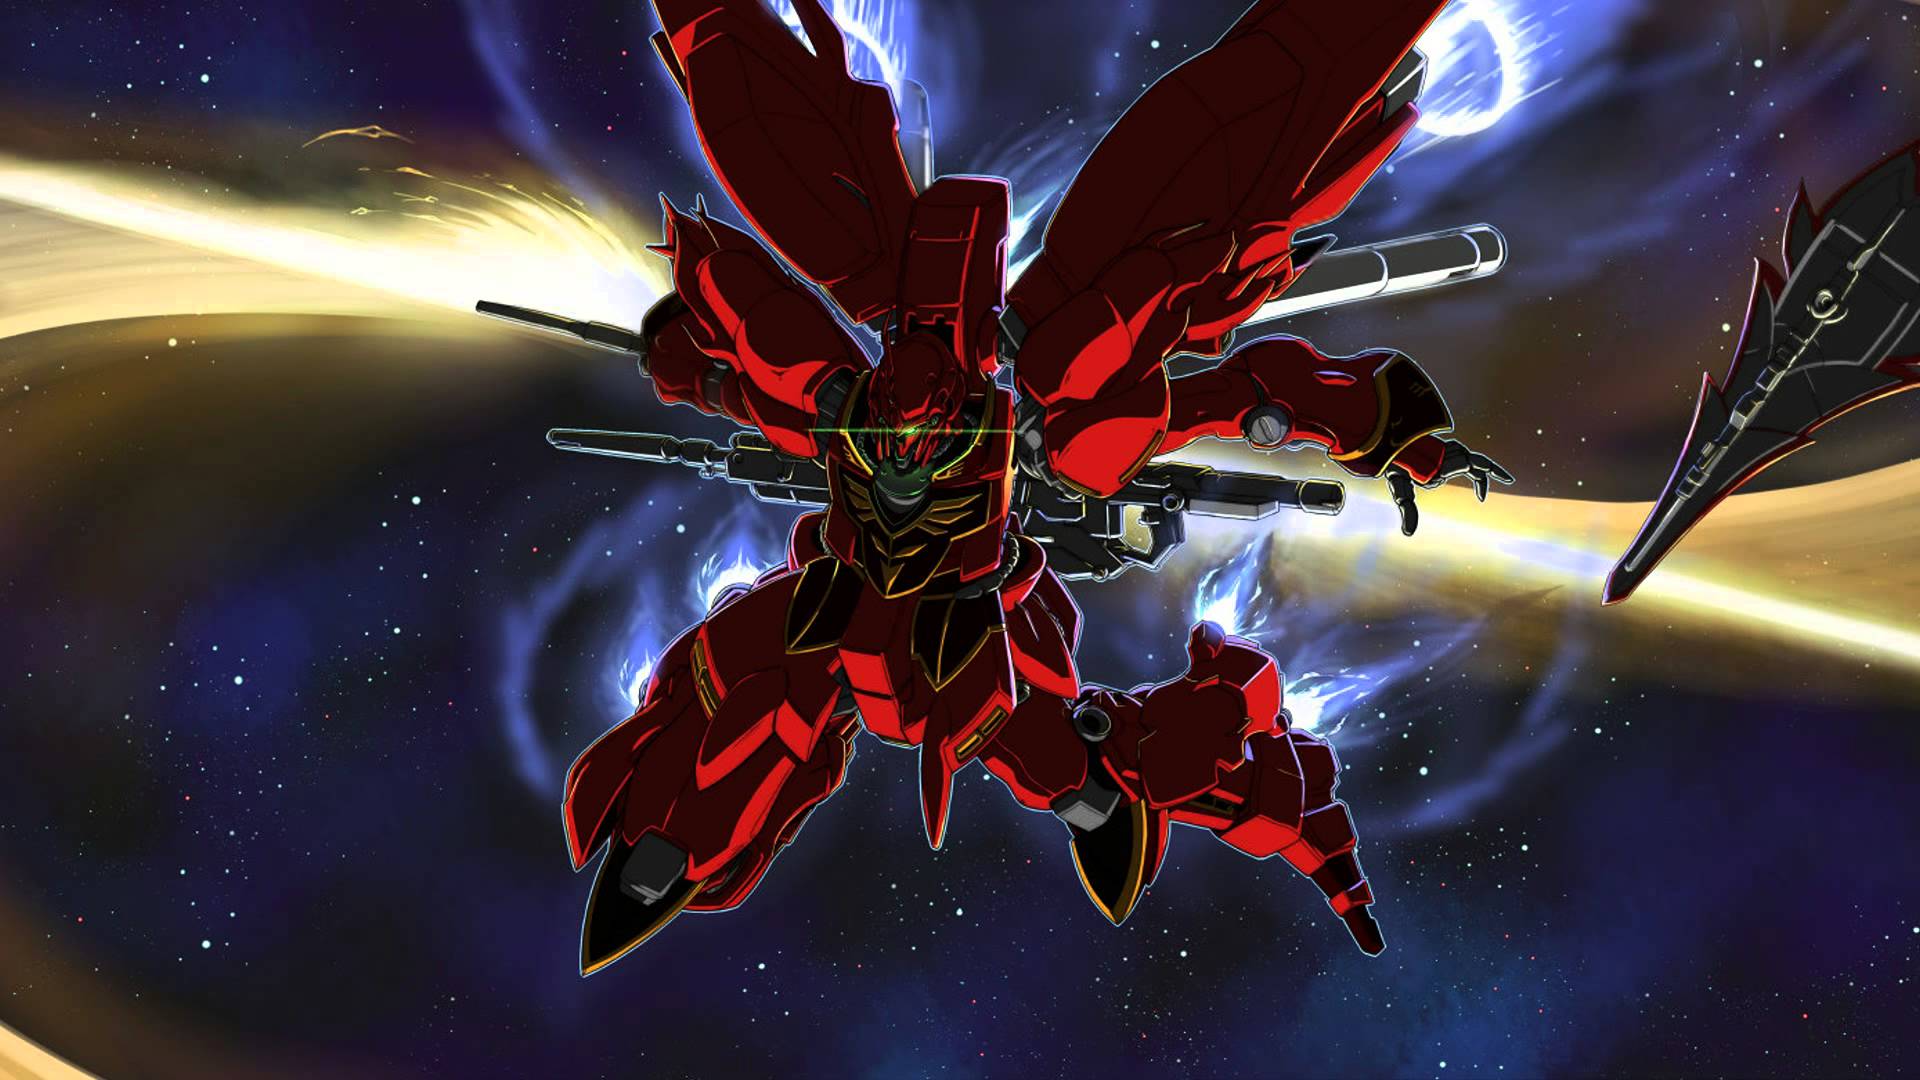 MSN-06S Sinanju - Gundam Seed & Anime Background Wallpapers on Desktop  Nexus (Image 760820)